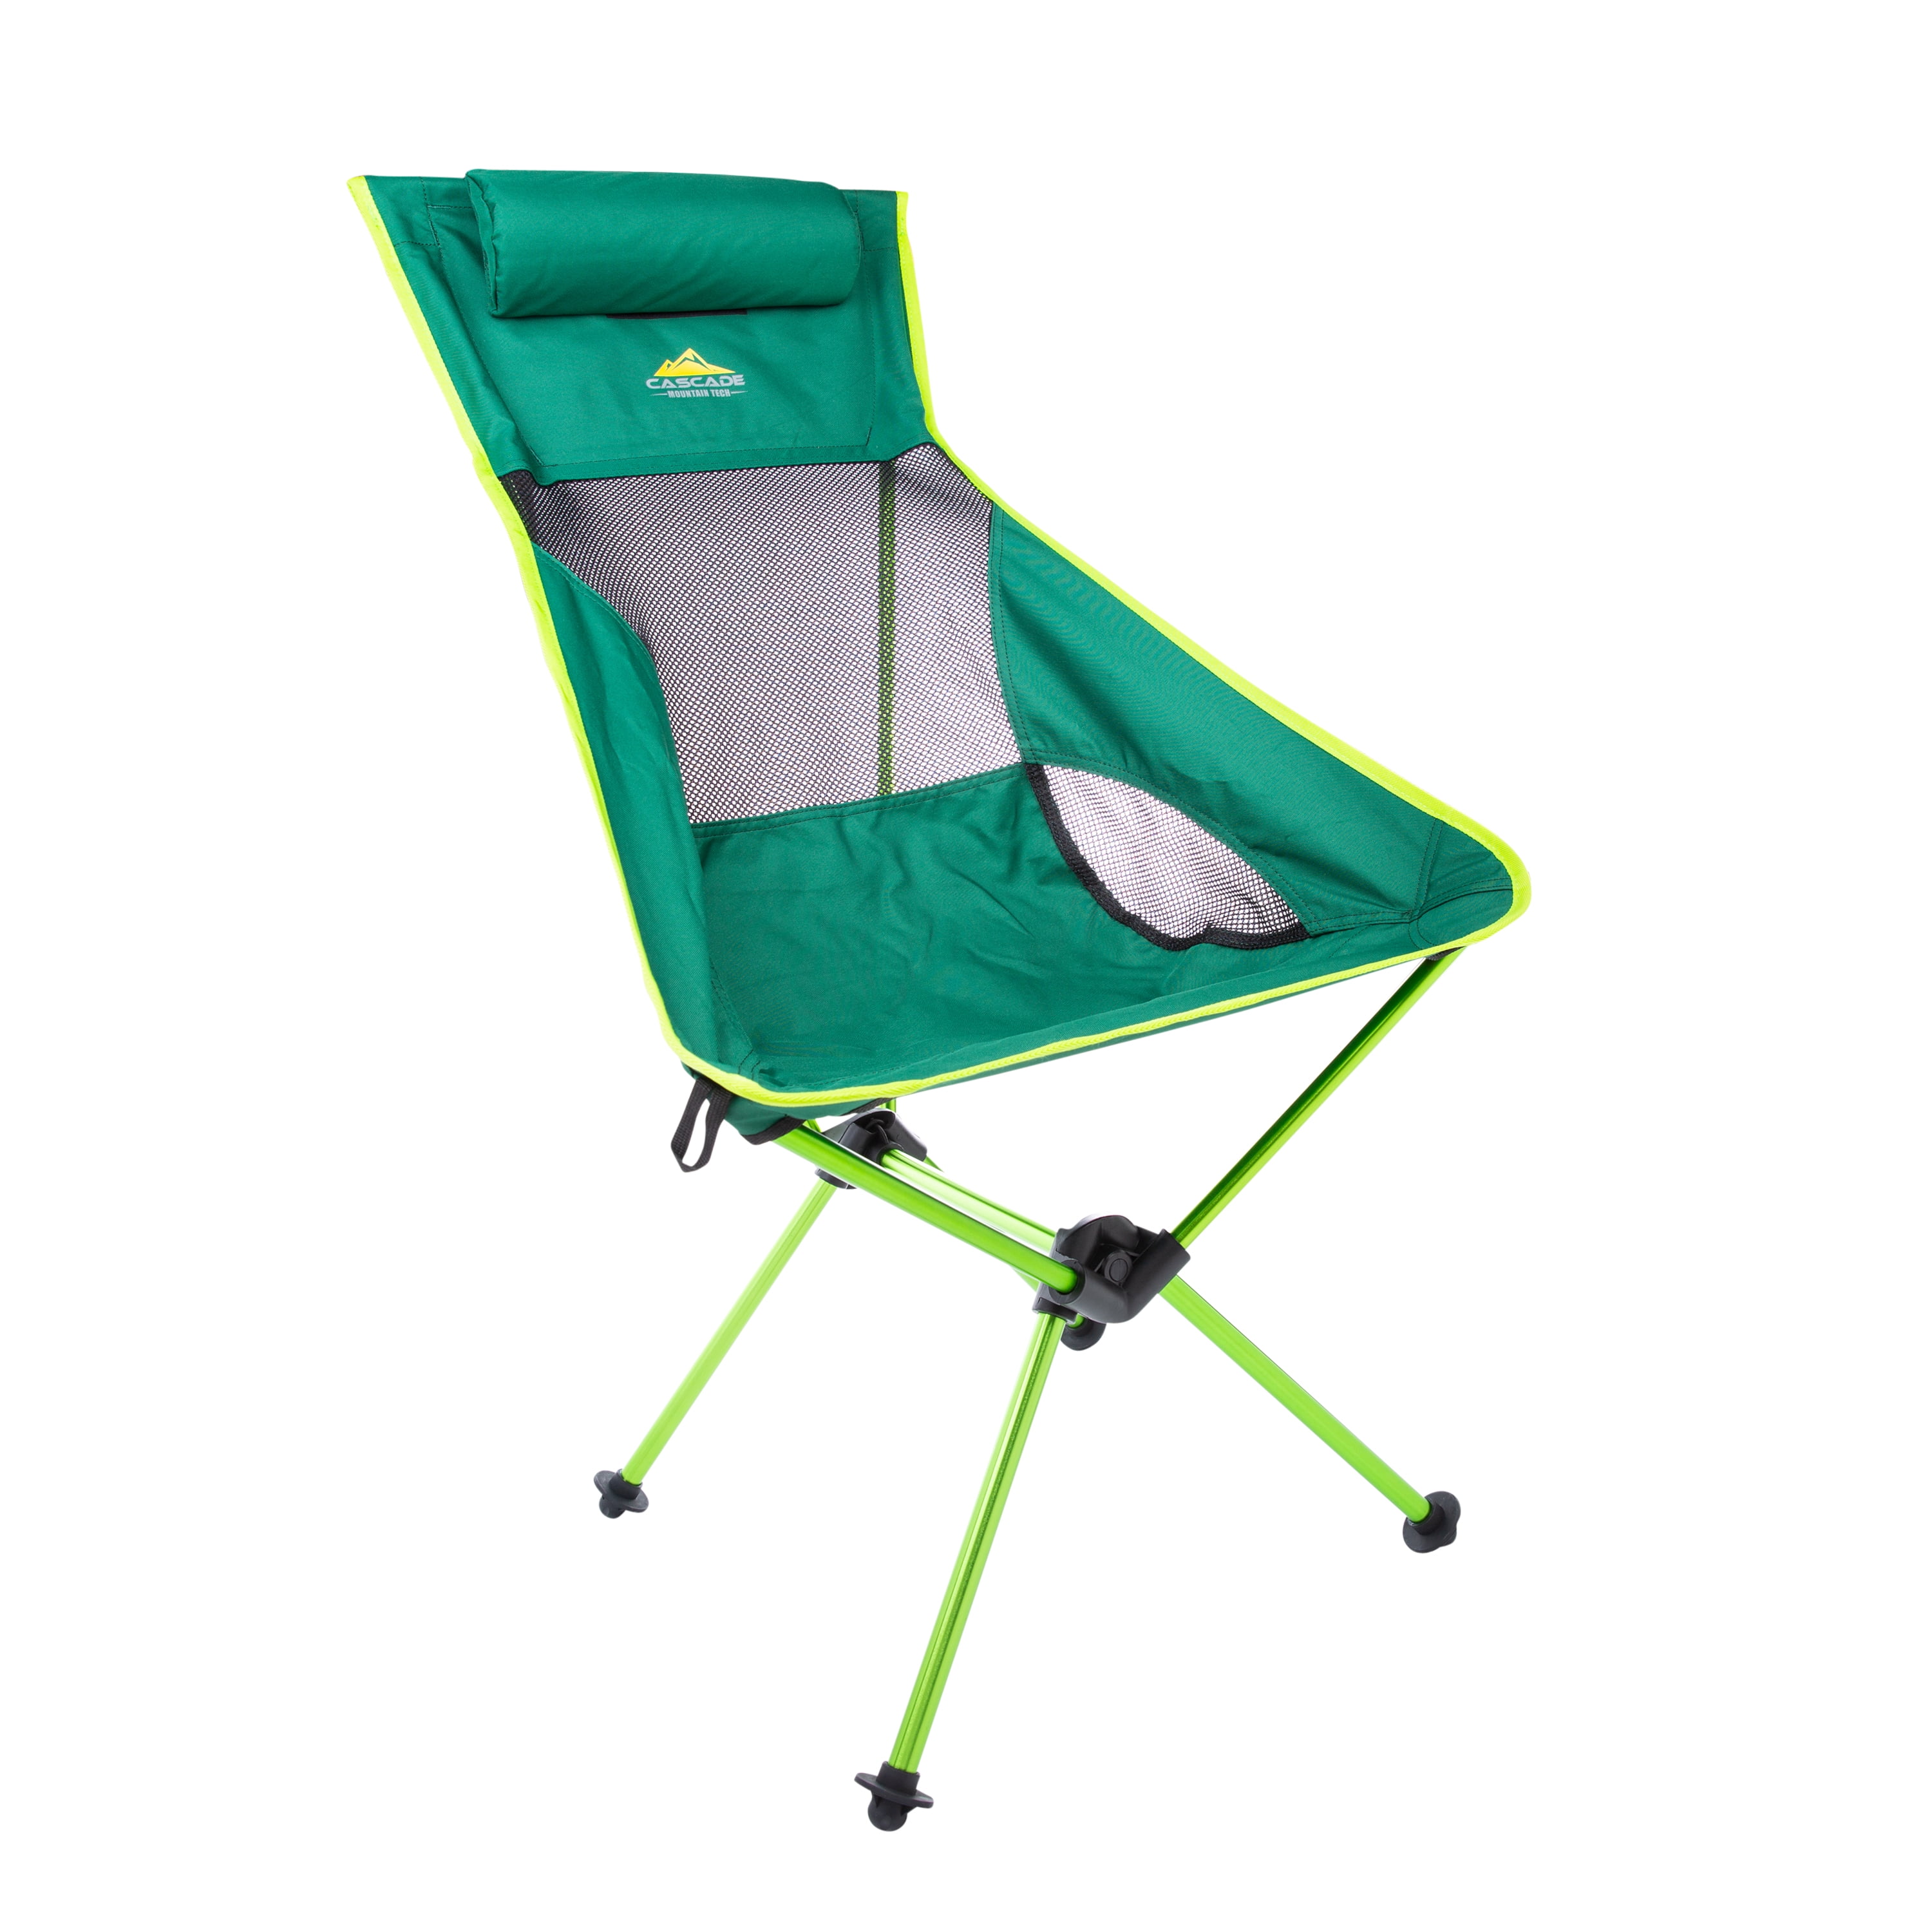 Cascade Mountain Tech Outdoor High Back Lightweight Camp Chair 